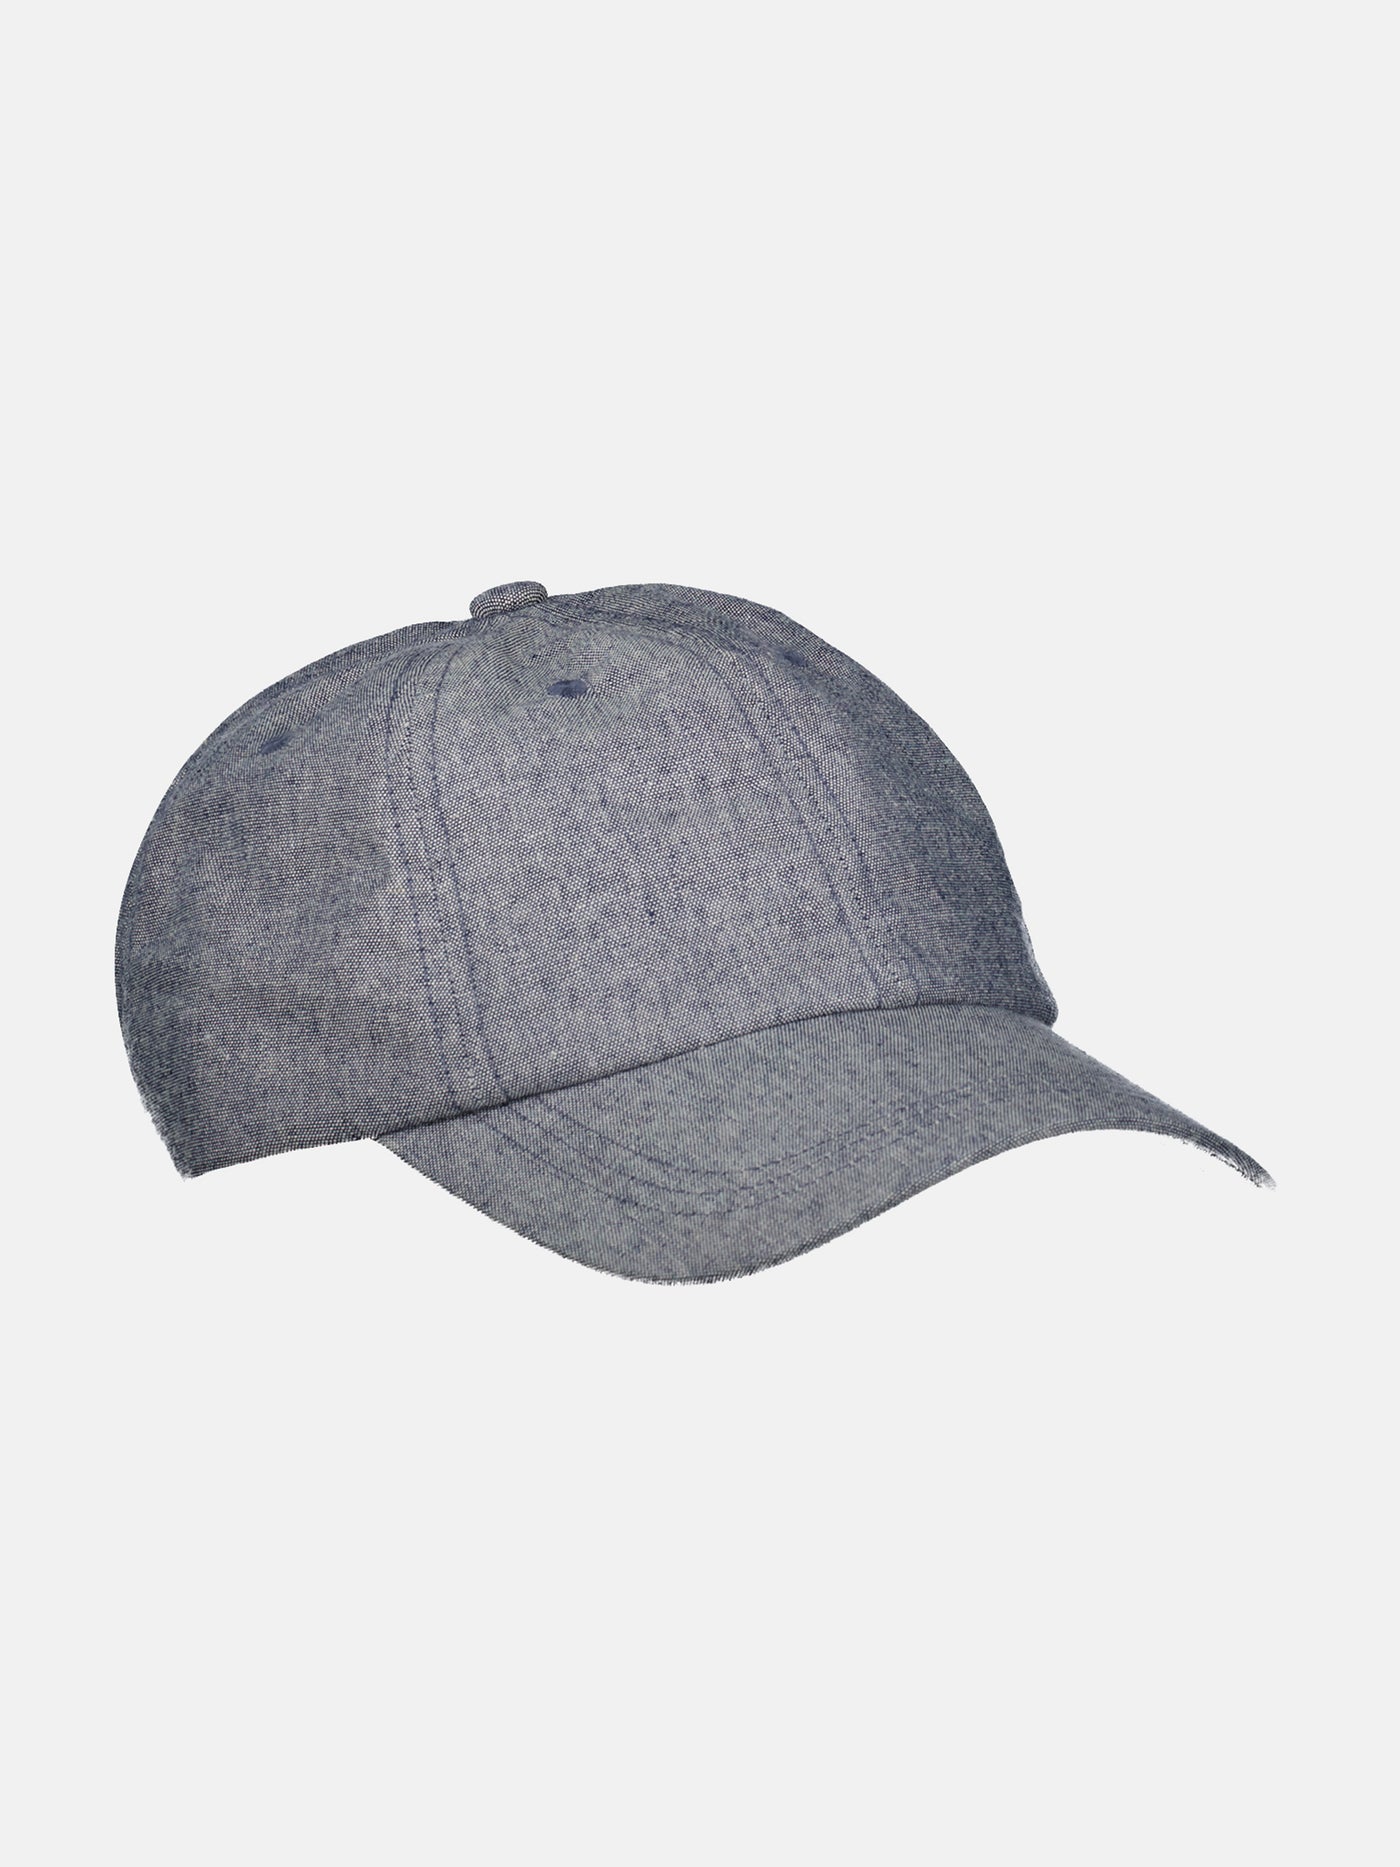 baseball cap, linen